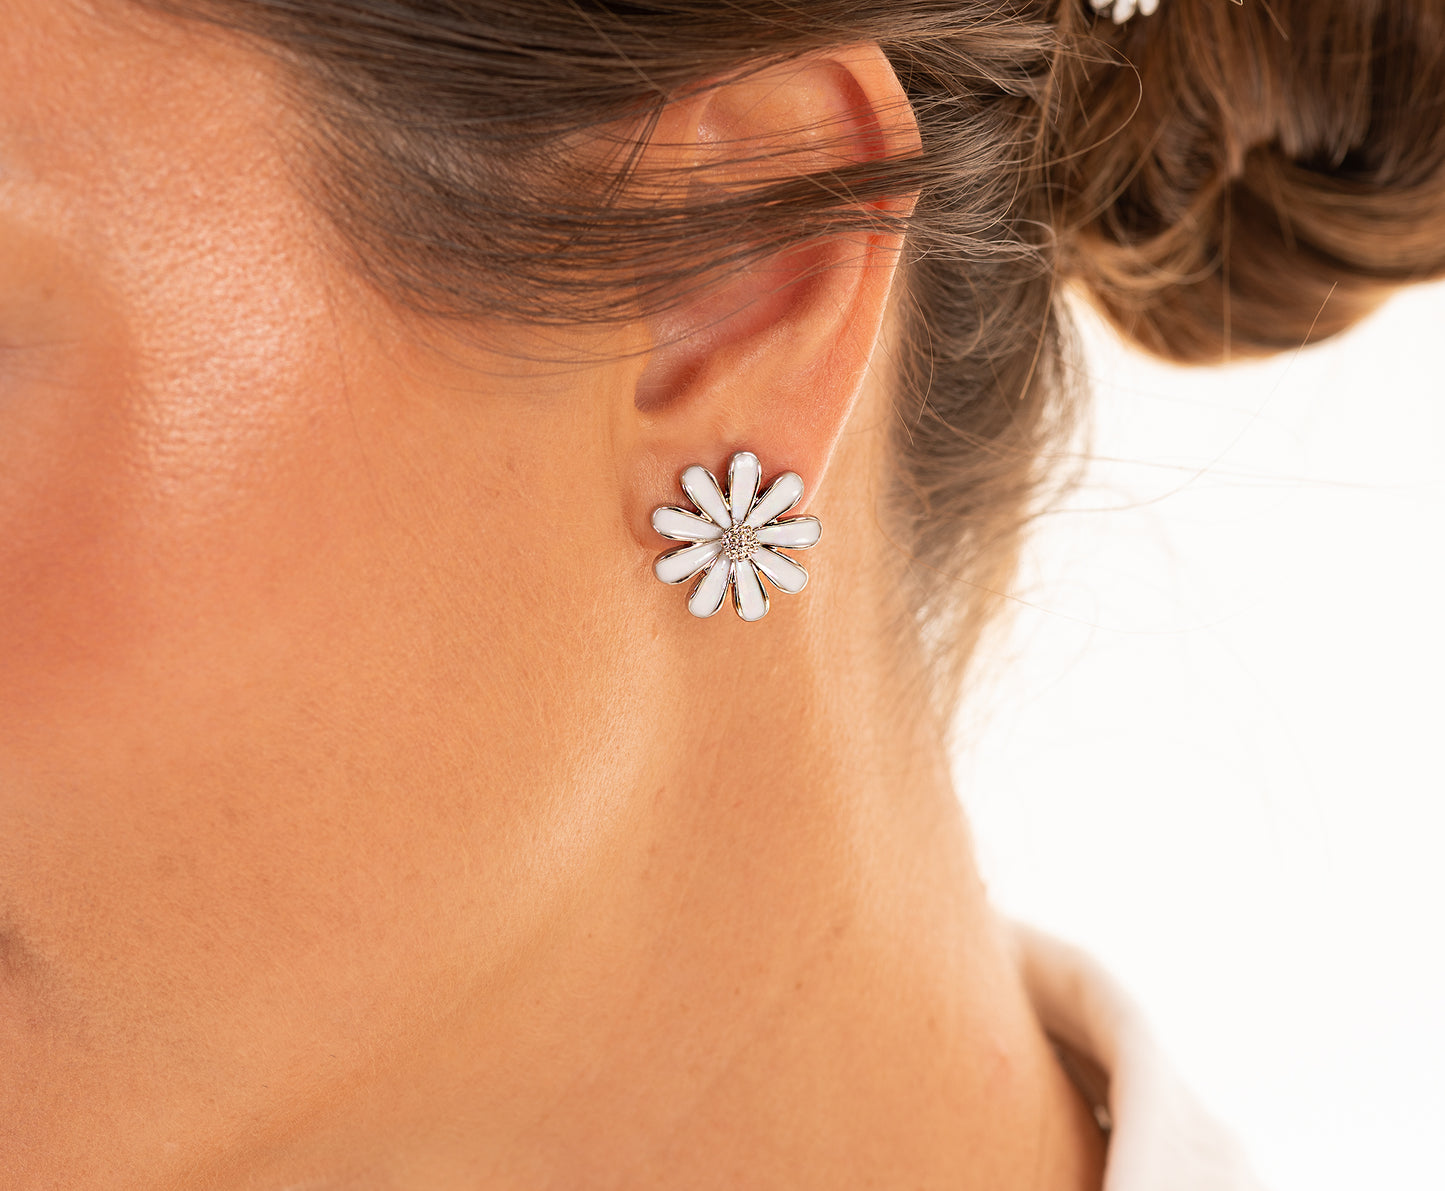 White Enamel Flower Stud Earring